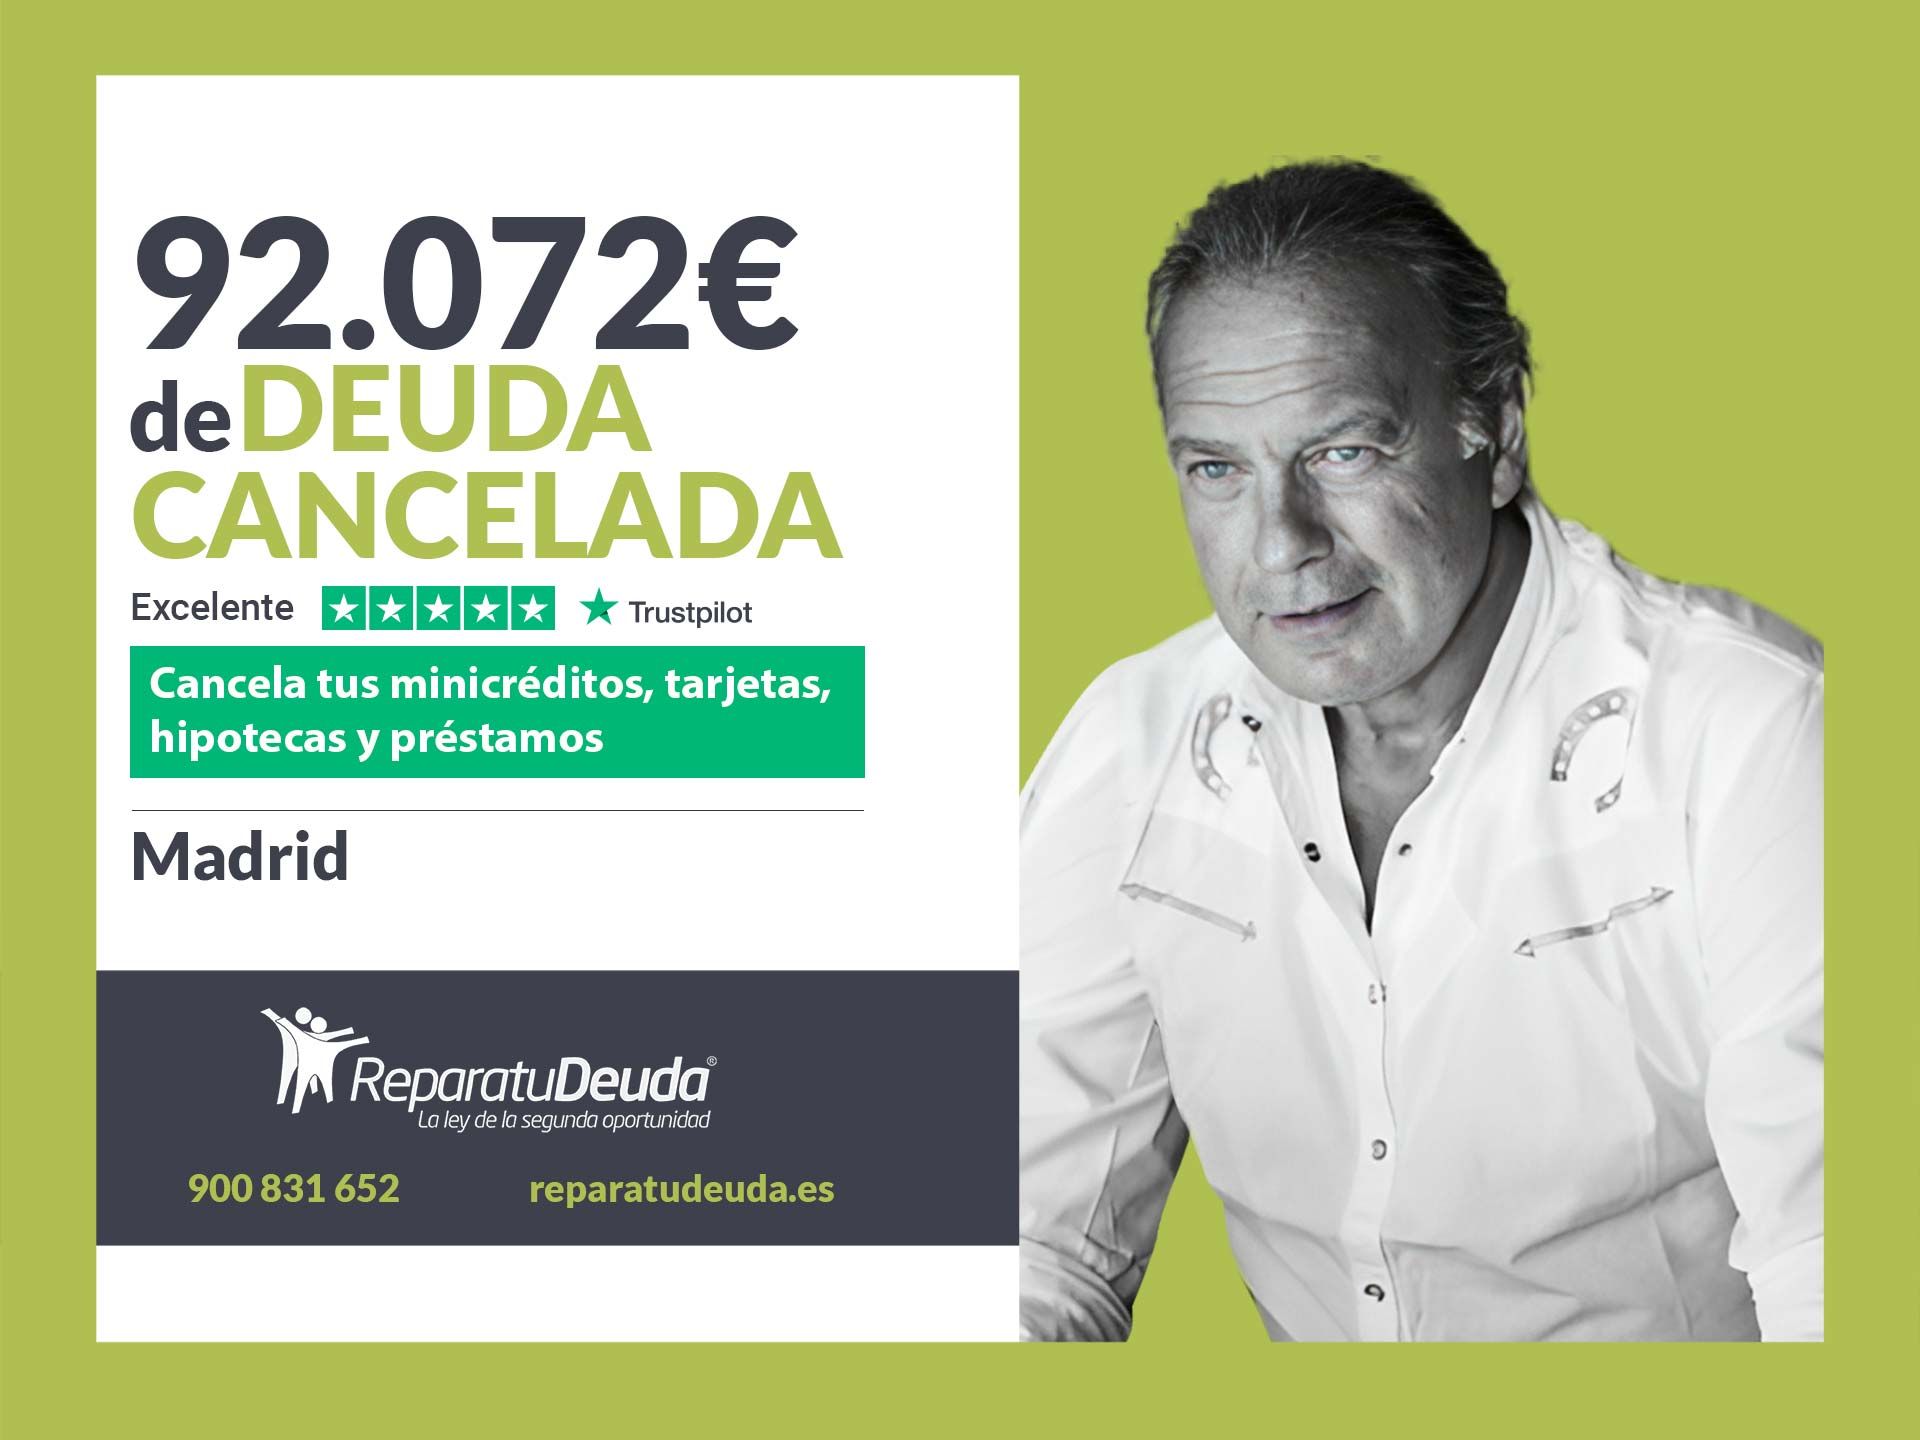 Repara tu Deuda Abogados cancela 92.072? en Madrid con la Ley de Segunda Oportunidad